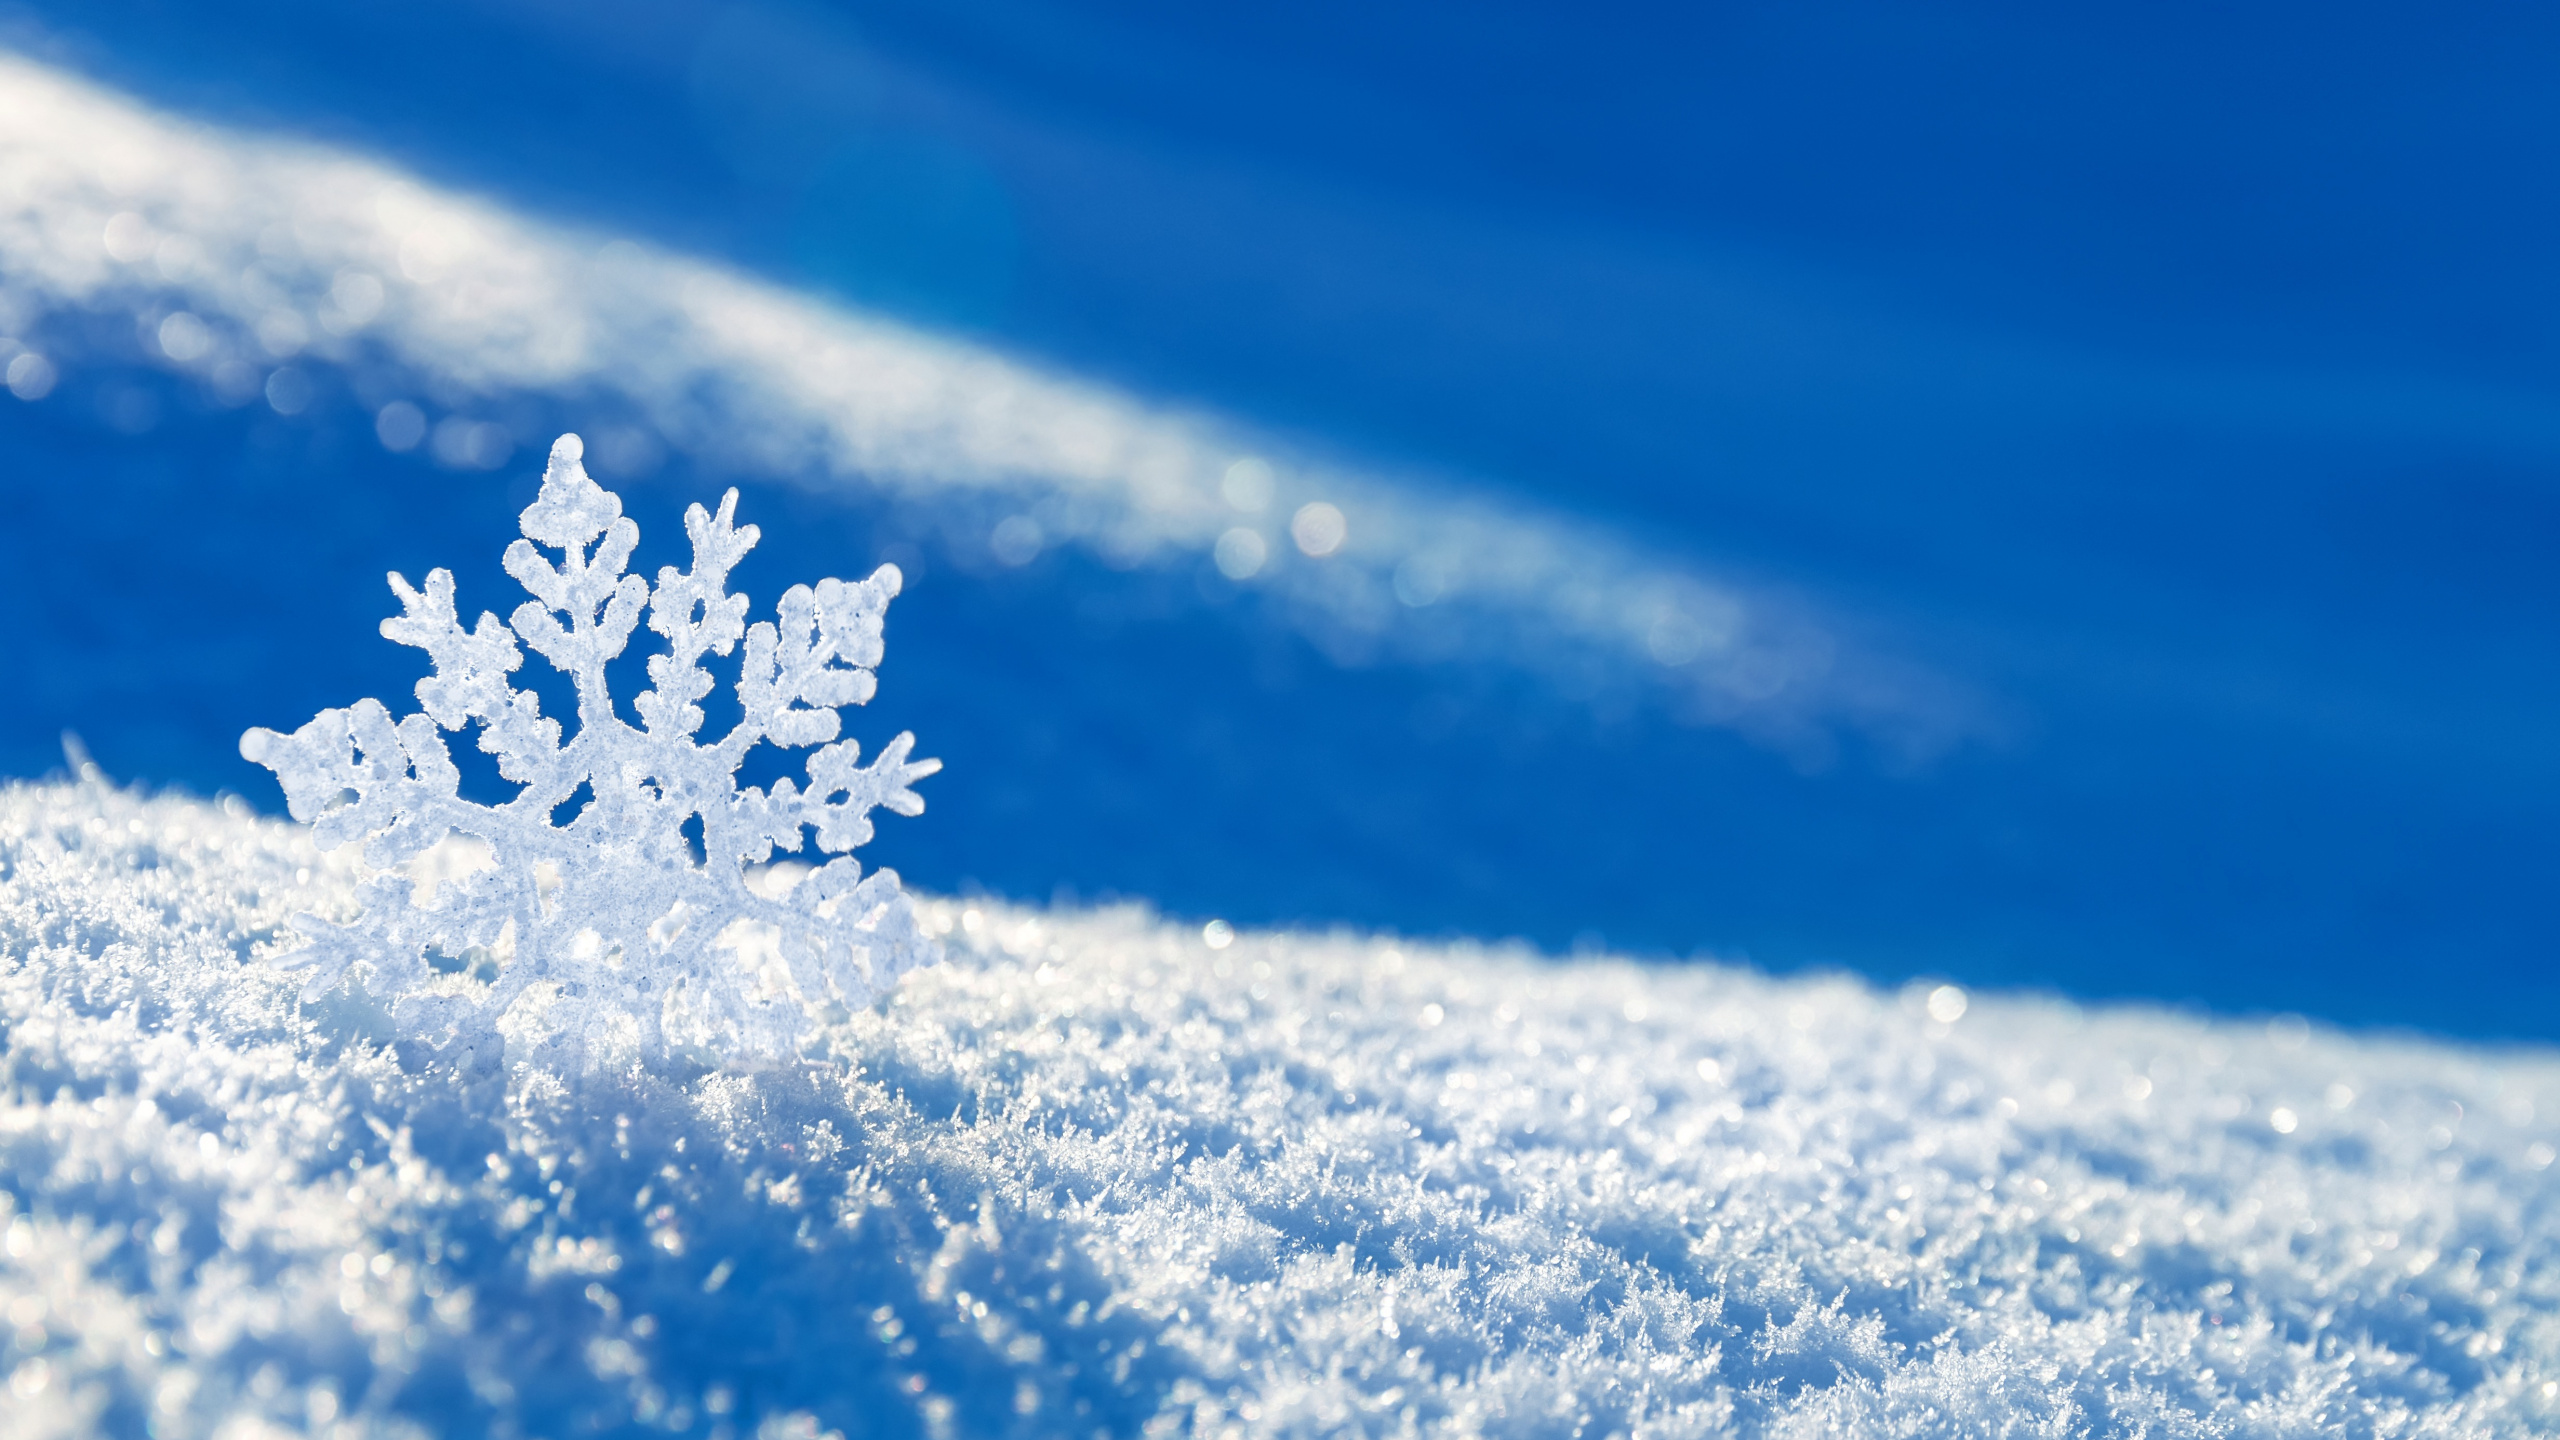 冬天, 冻结, 雪花, Fir, 天空 壁纸 2560x1440 允许